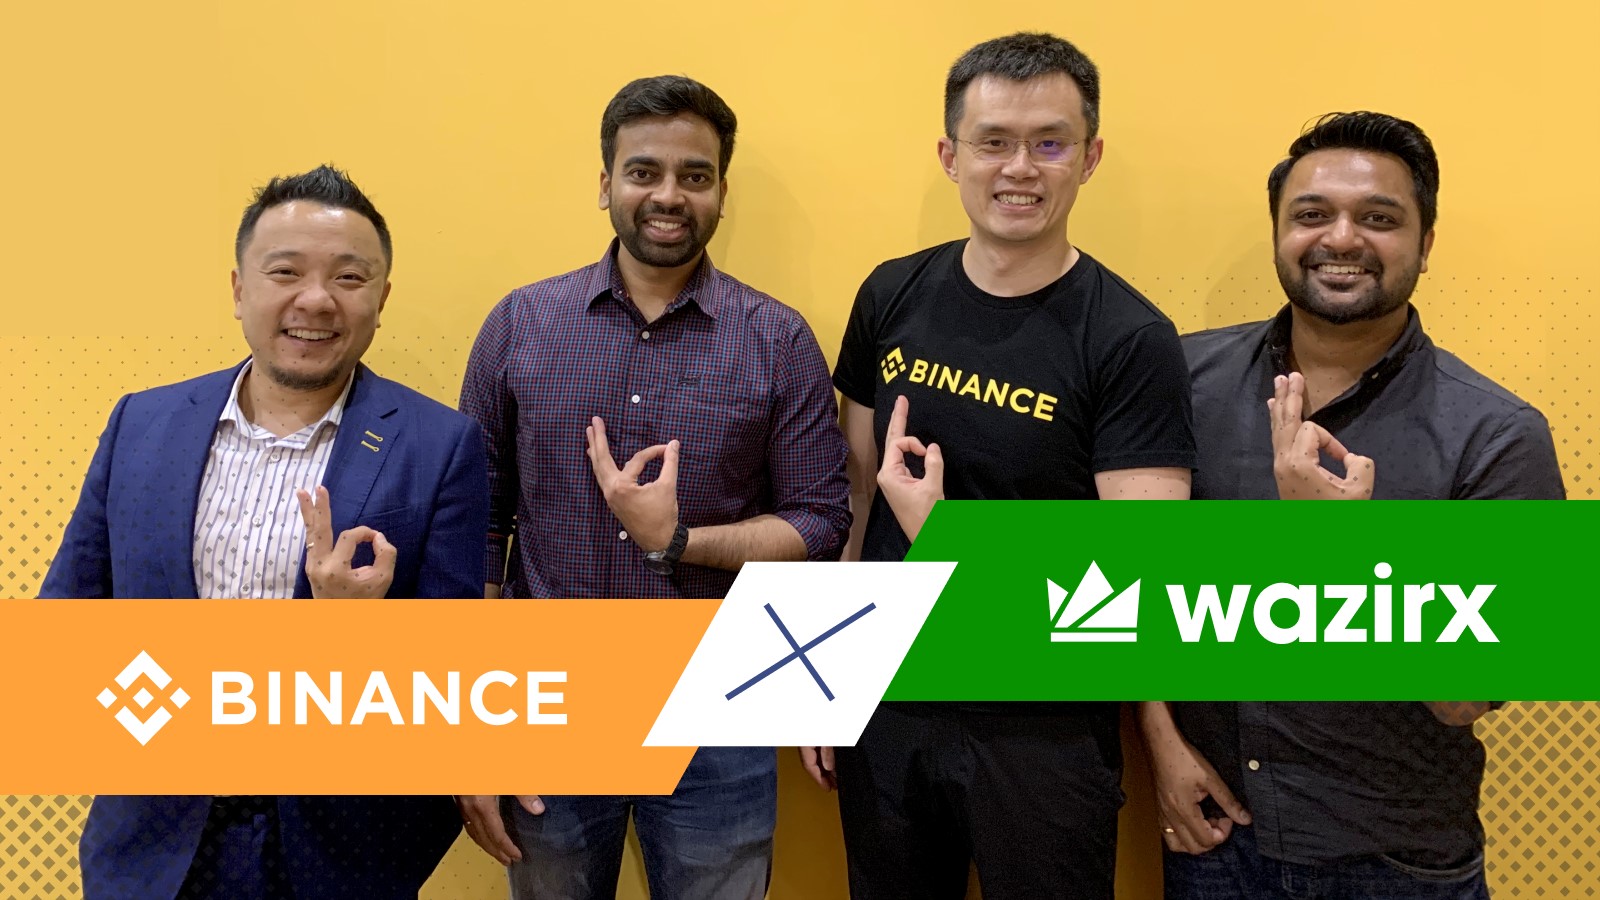 WazirX partnership with Binance